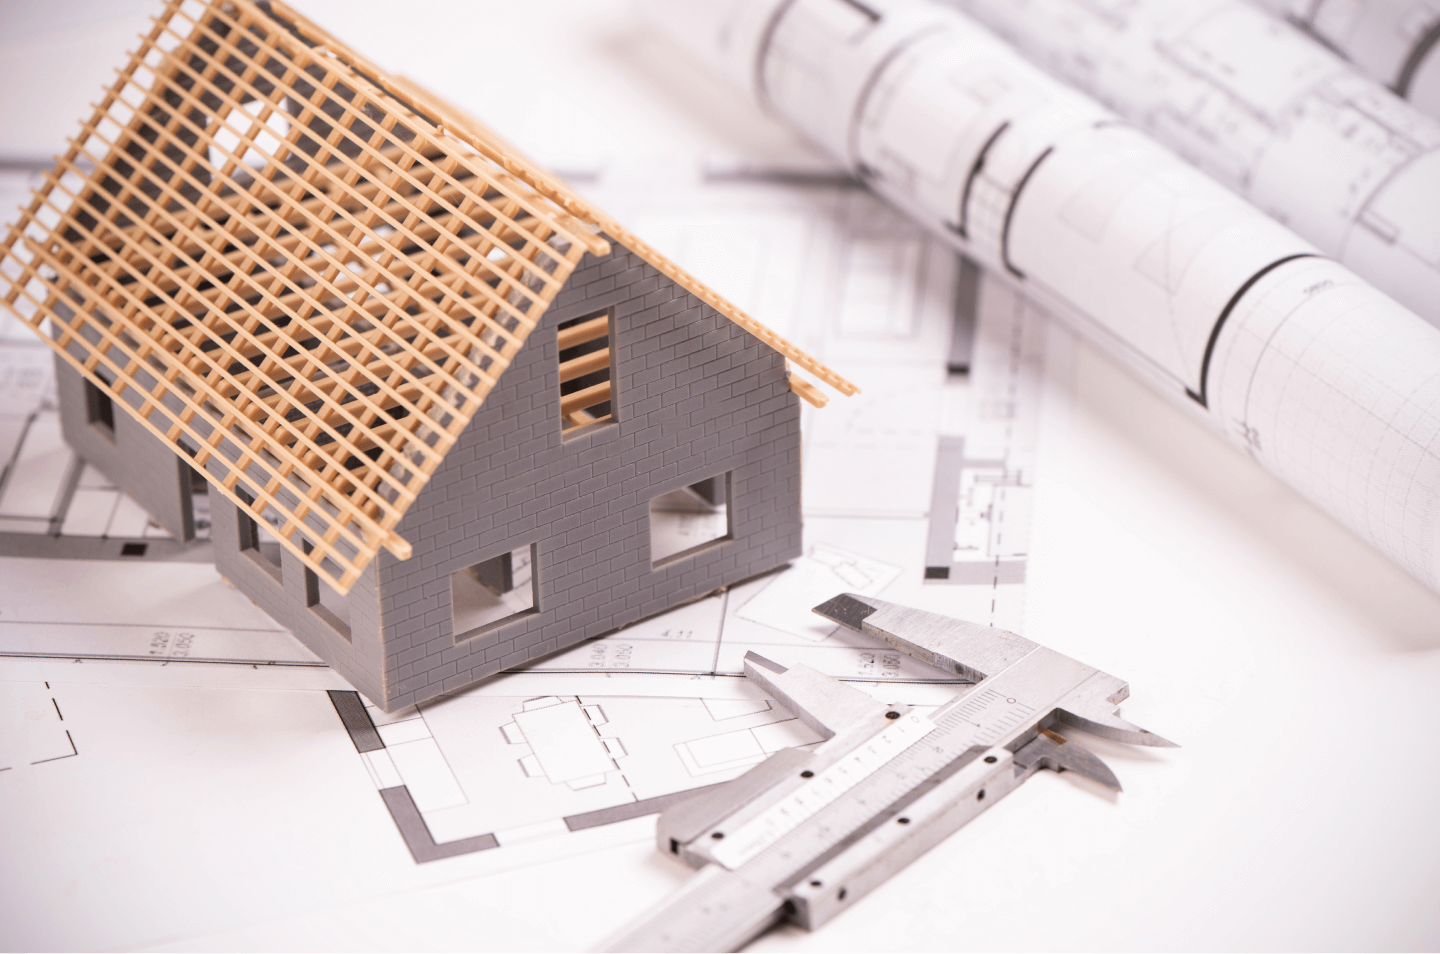 Lo que debes saber sobre licencias y permisos antes de construir tu casa